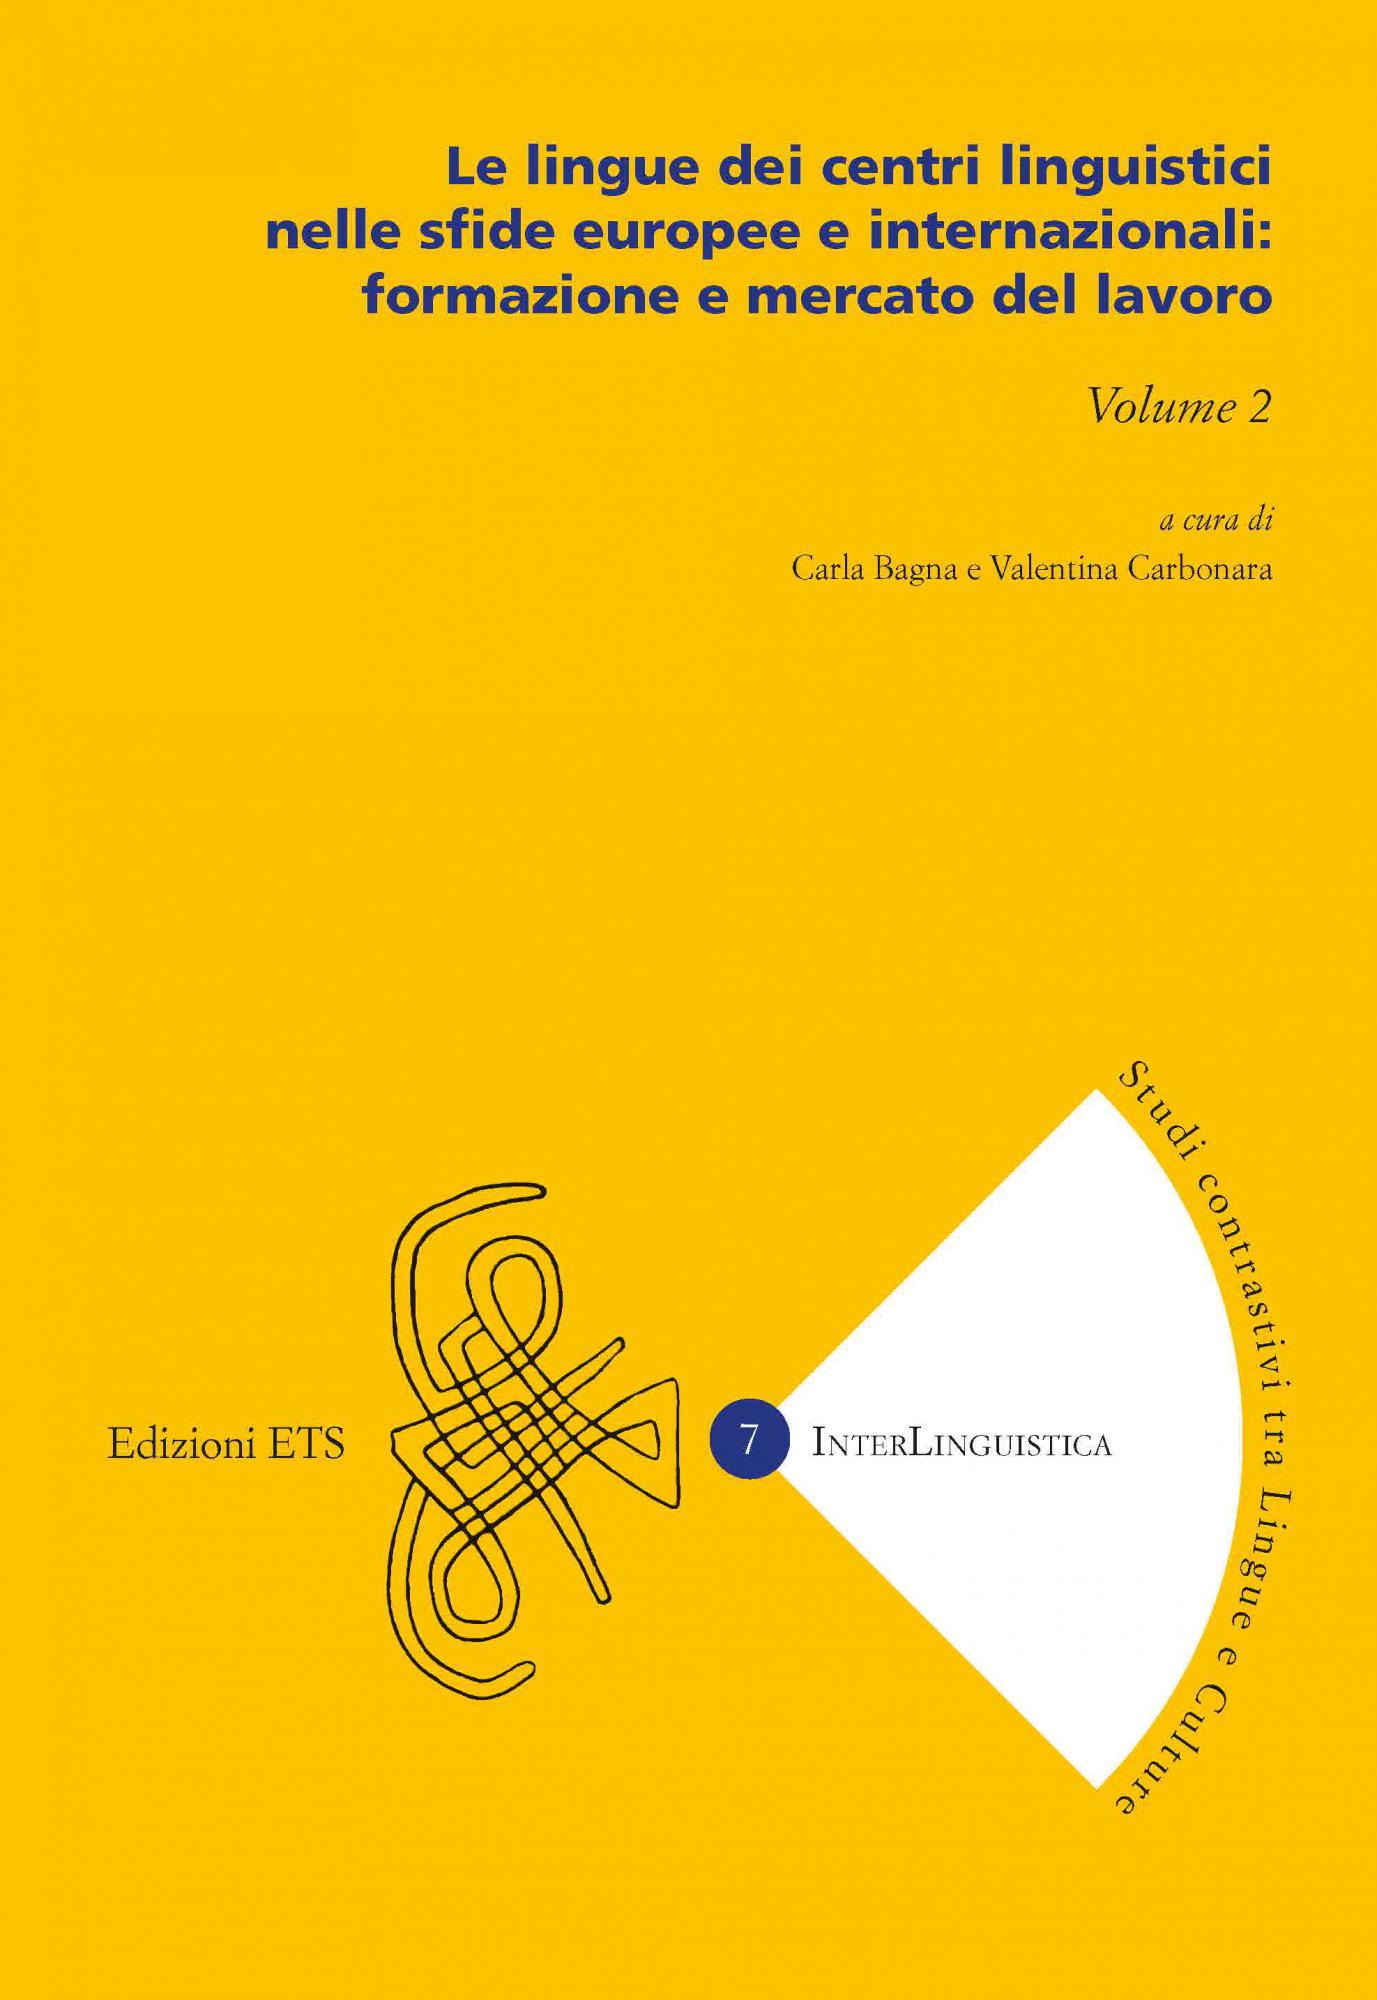 Le lingue dei centri linguistici nelle sfide europee e internazionali: formazione e mercato del lavoro.Volume 2